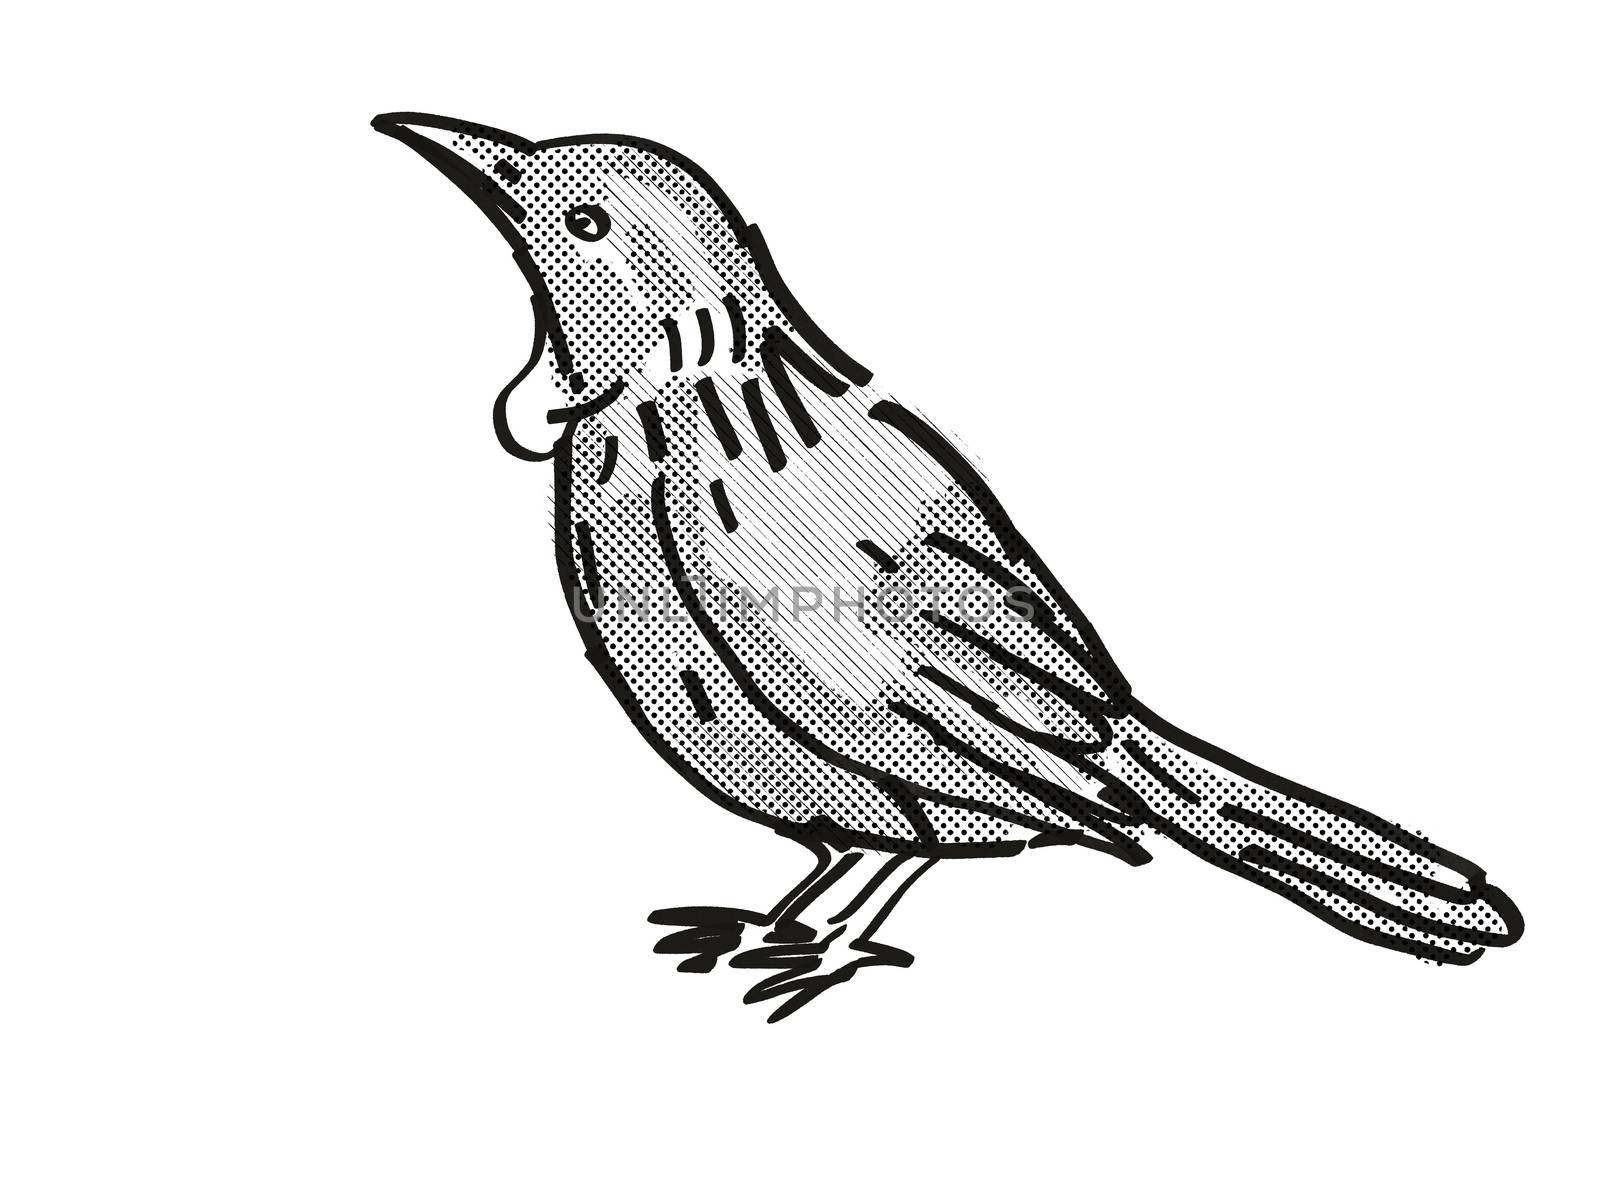 Tui New Zealand Bird Cartoon Retro Drawing by patrimonio